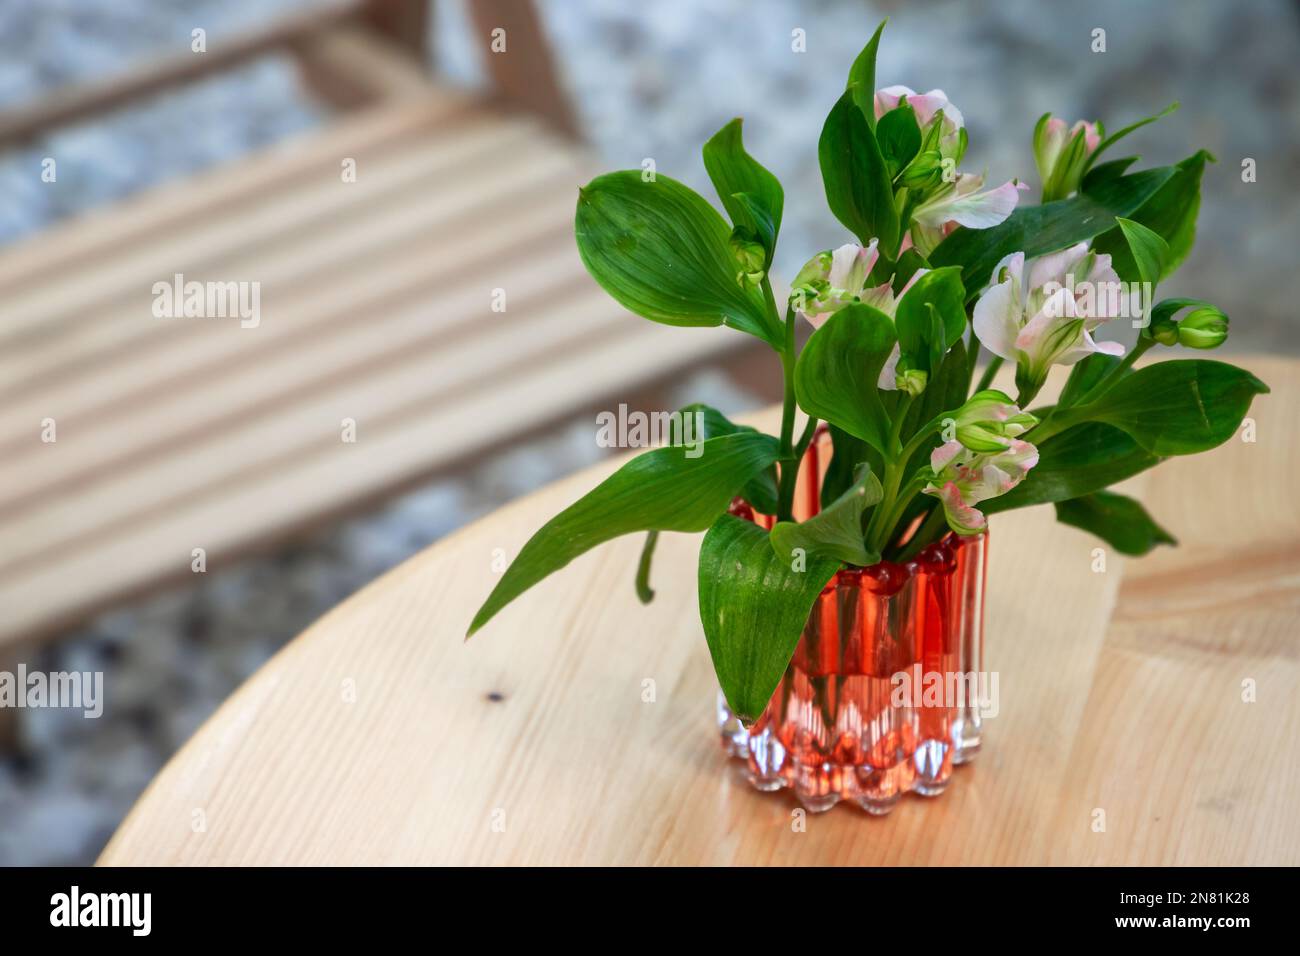 Un petit bouquet de fleurs se trouve dans un vase en verre sur une table en bois. Alstroemeria, communément appelé le nénuphars péruvien ou le nénuphars des Incas Banque D'Images